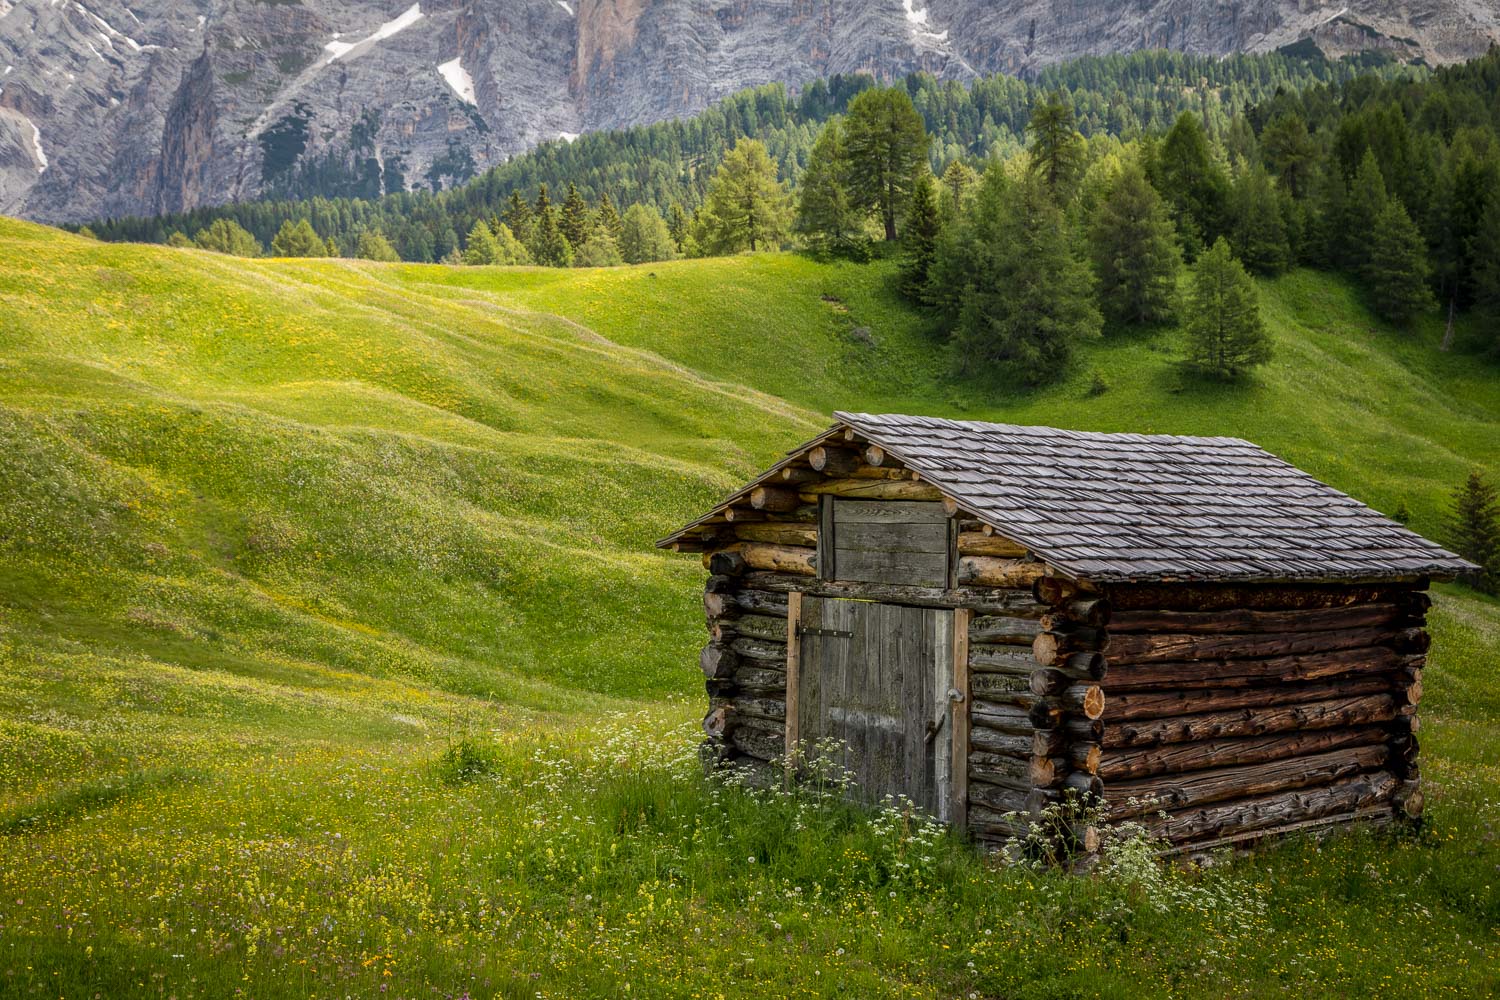 Armentara meadows, Dolomites